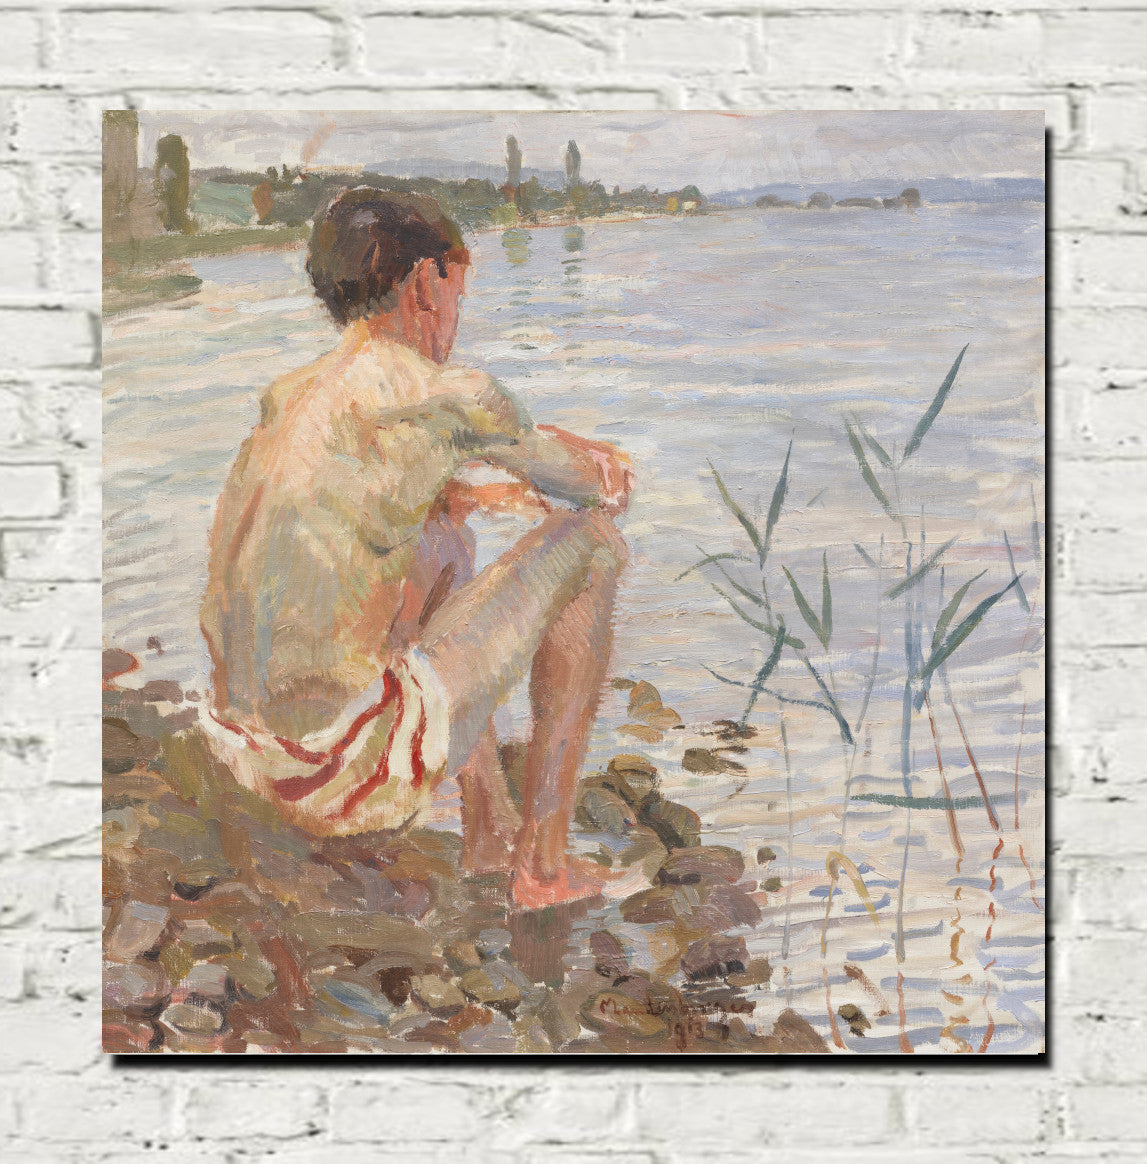 Bathing Boy (Dingelsdorf) (1913) by Christian Landenberger